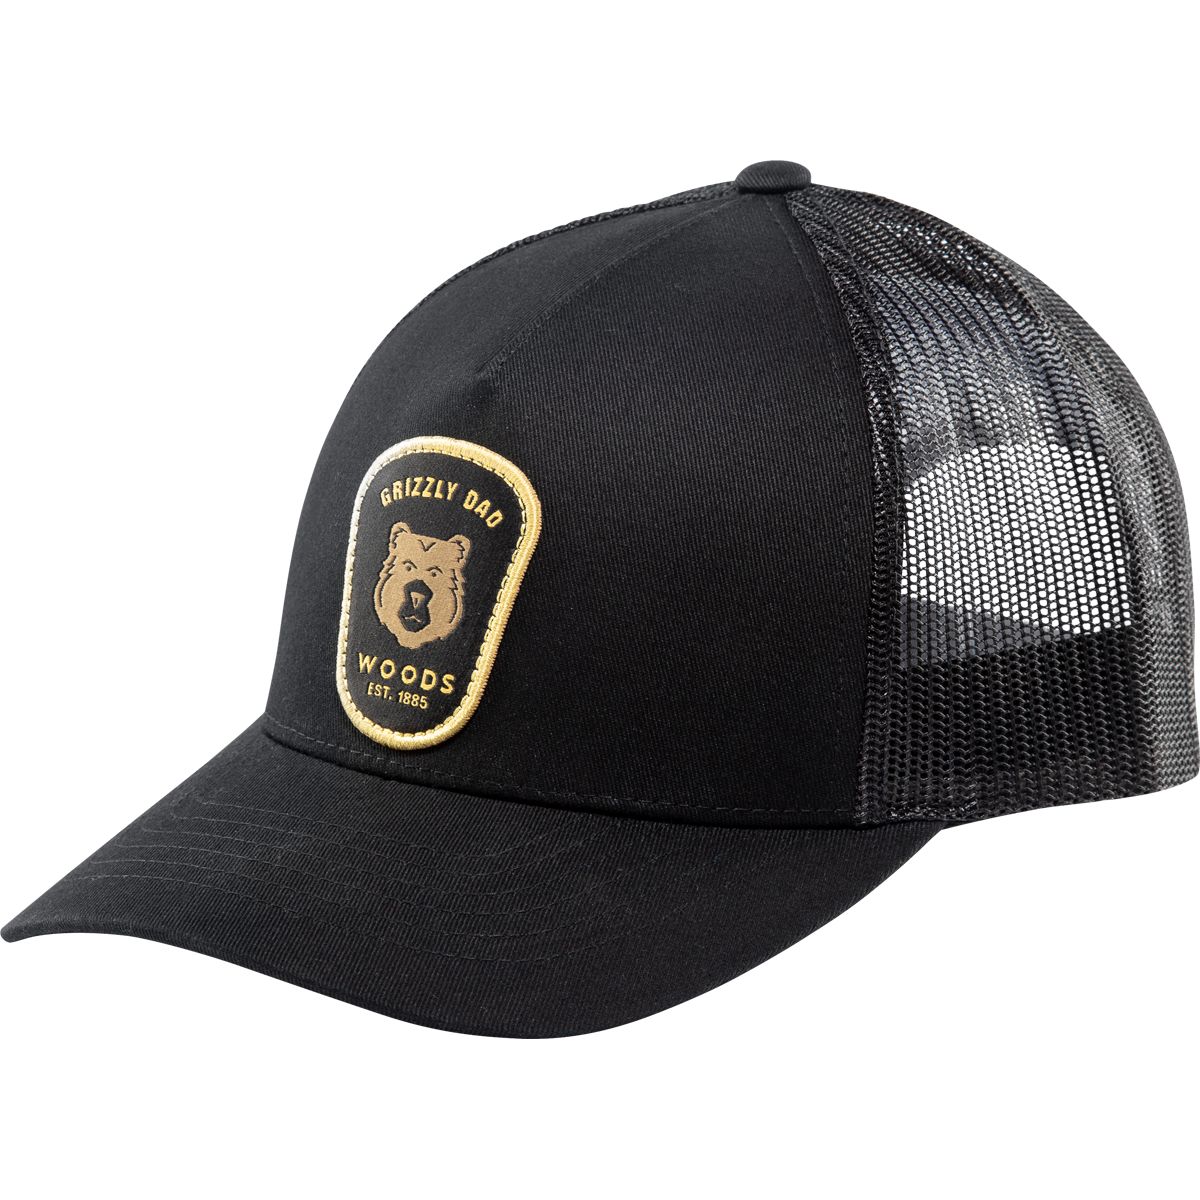 Woods Men's Heritage Badge Trucker Hat